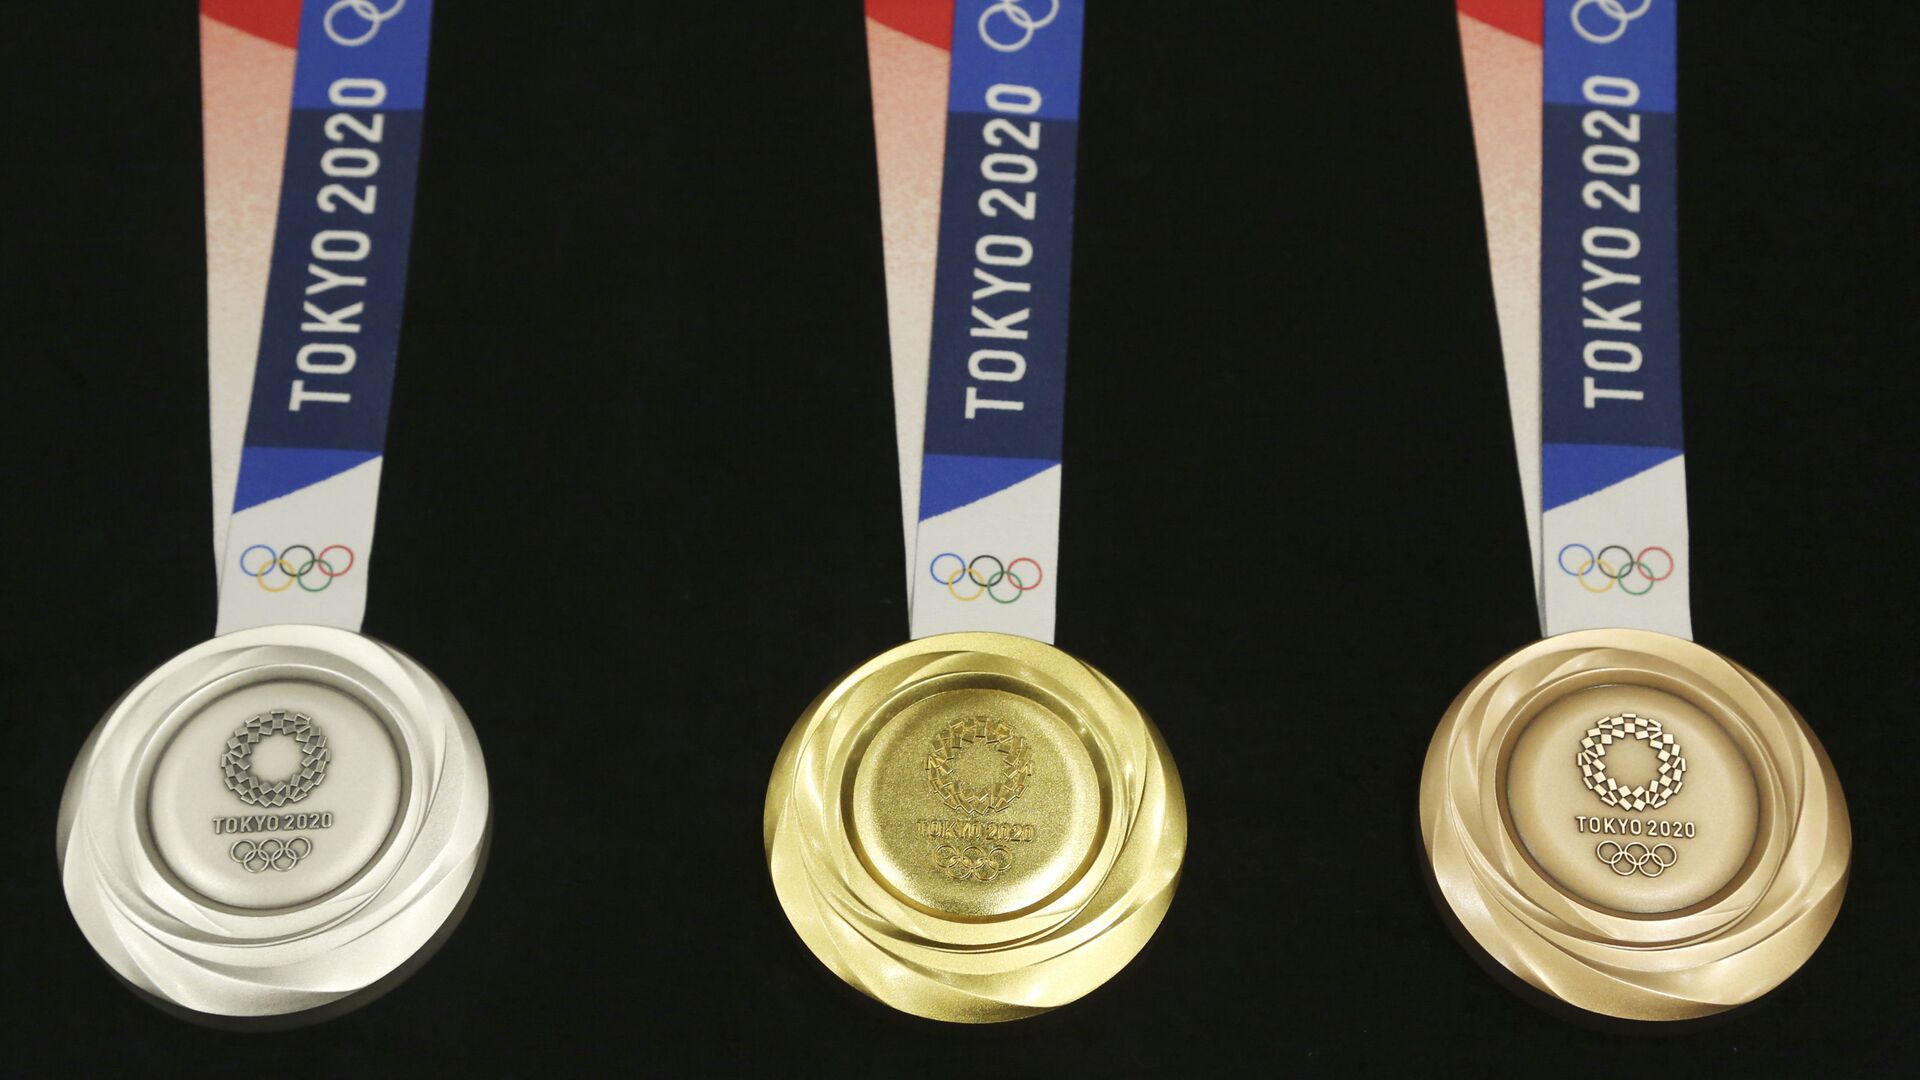 Medallas de los Juegos Olímpicos de Tokio 2020 - Sputnik Mundo, 1920, 12.01.2022